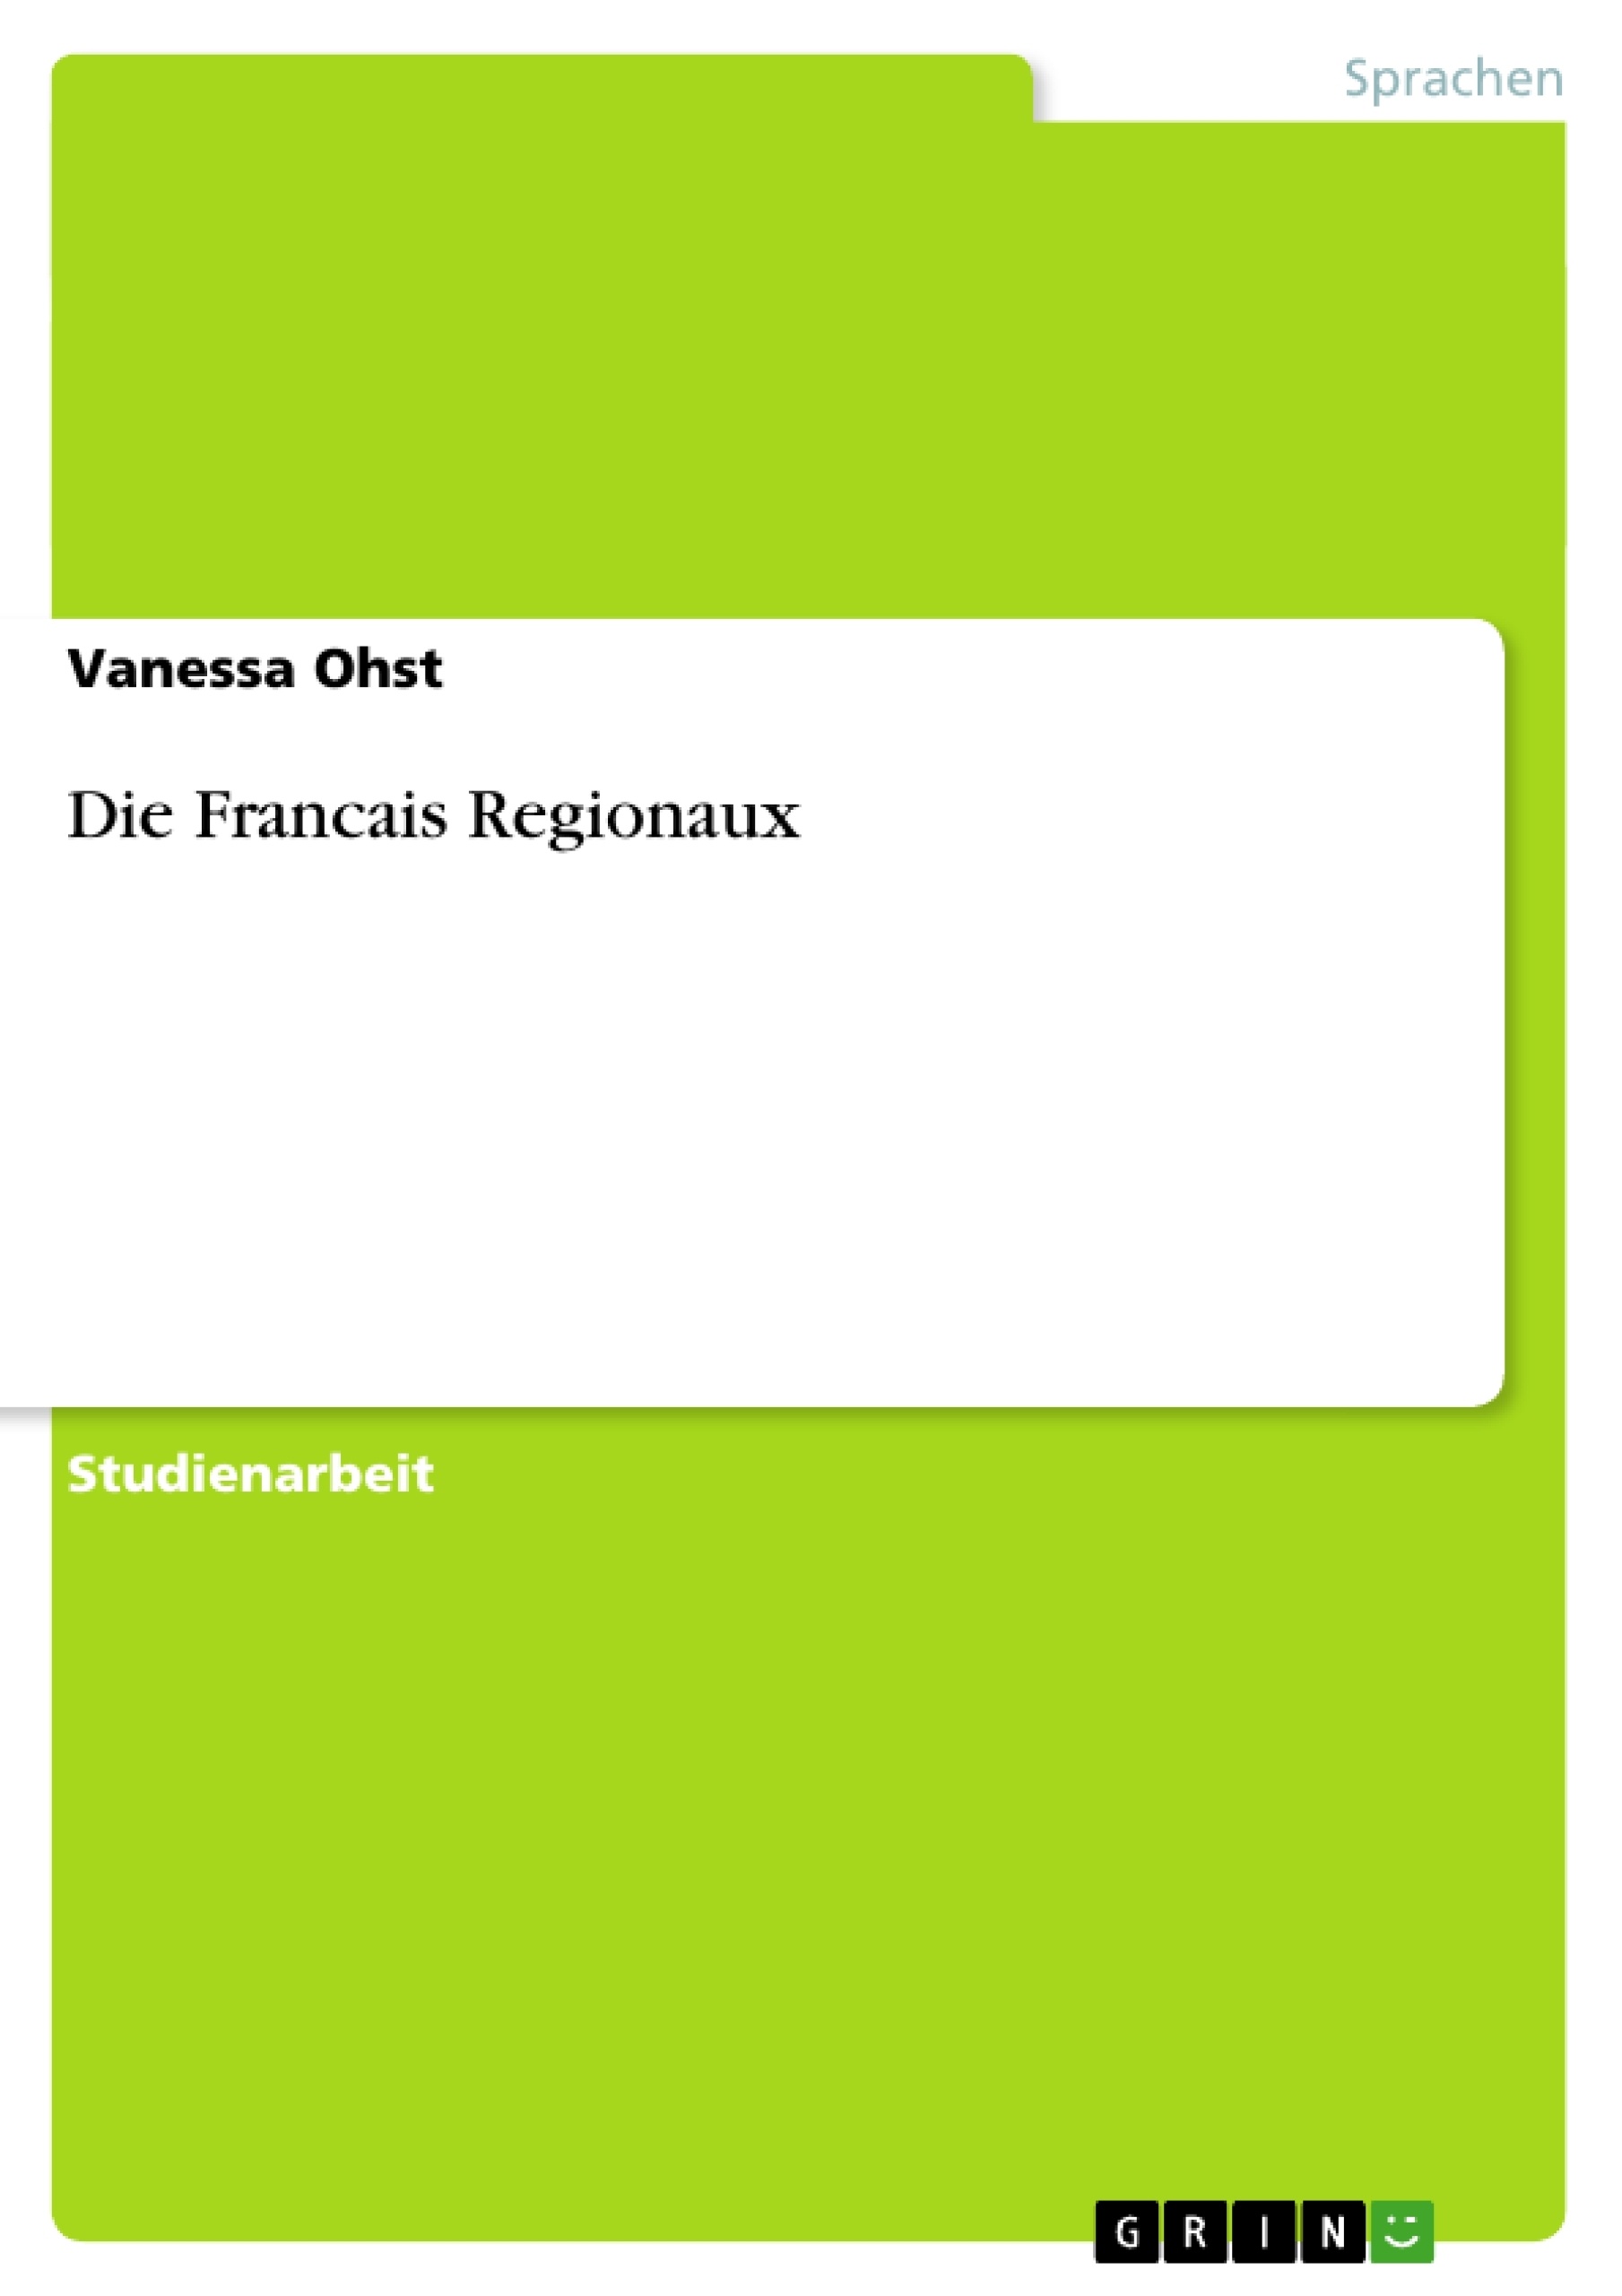 Title: Die Francais Regionaux